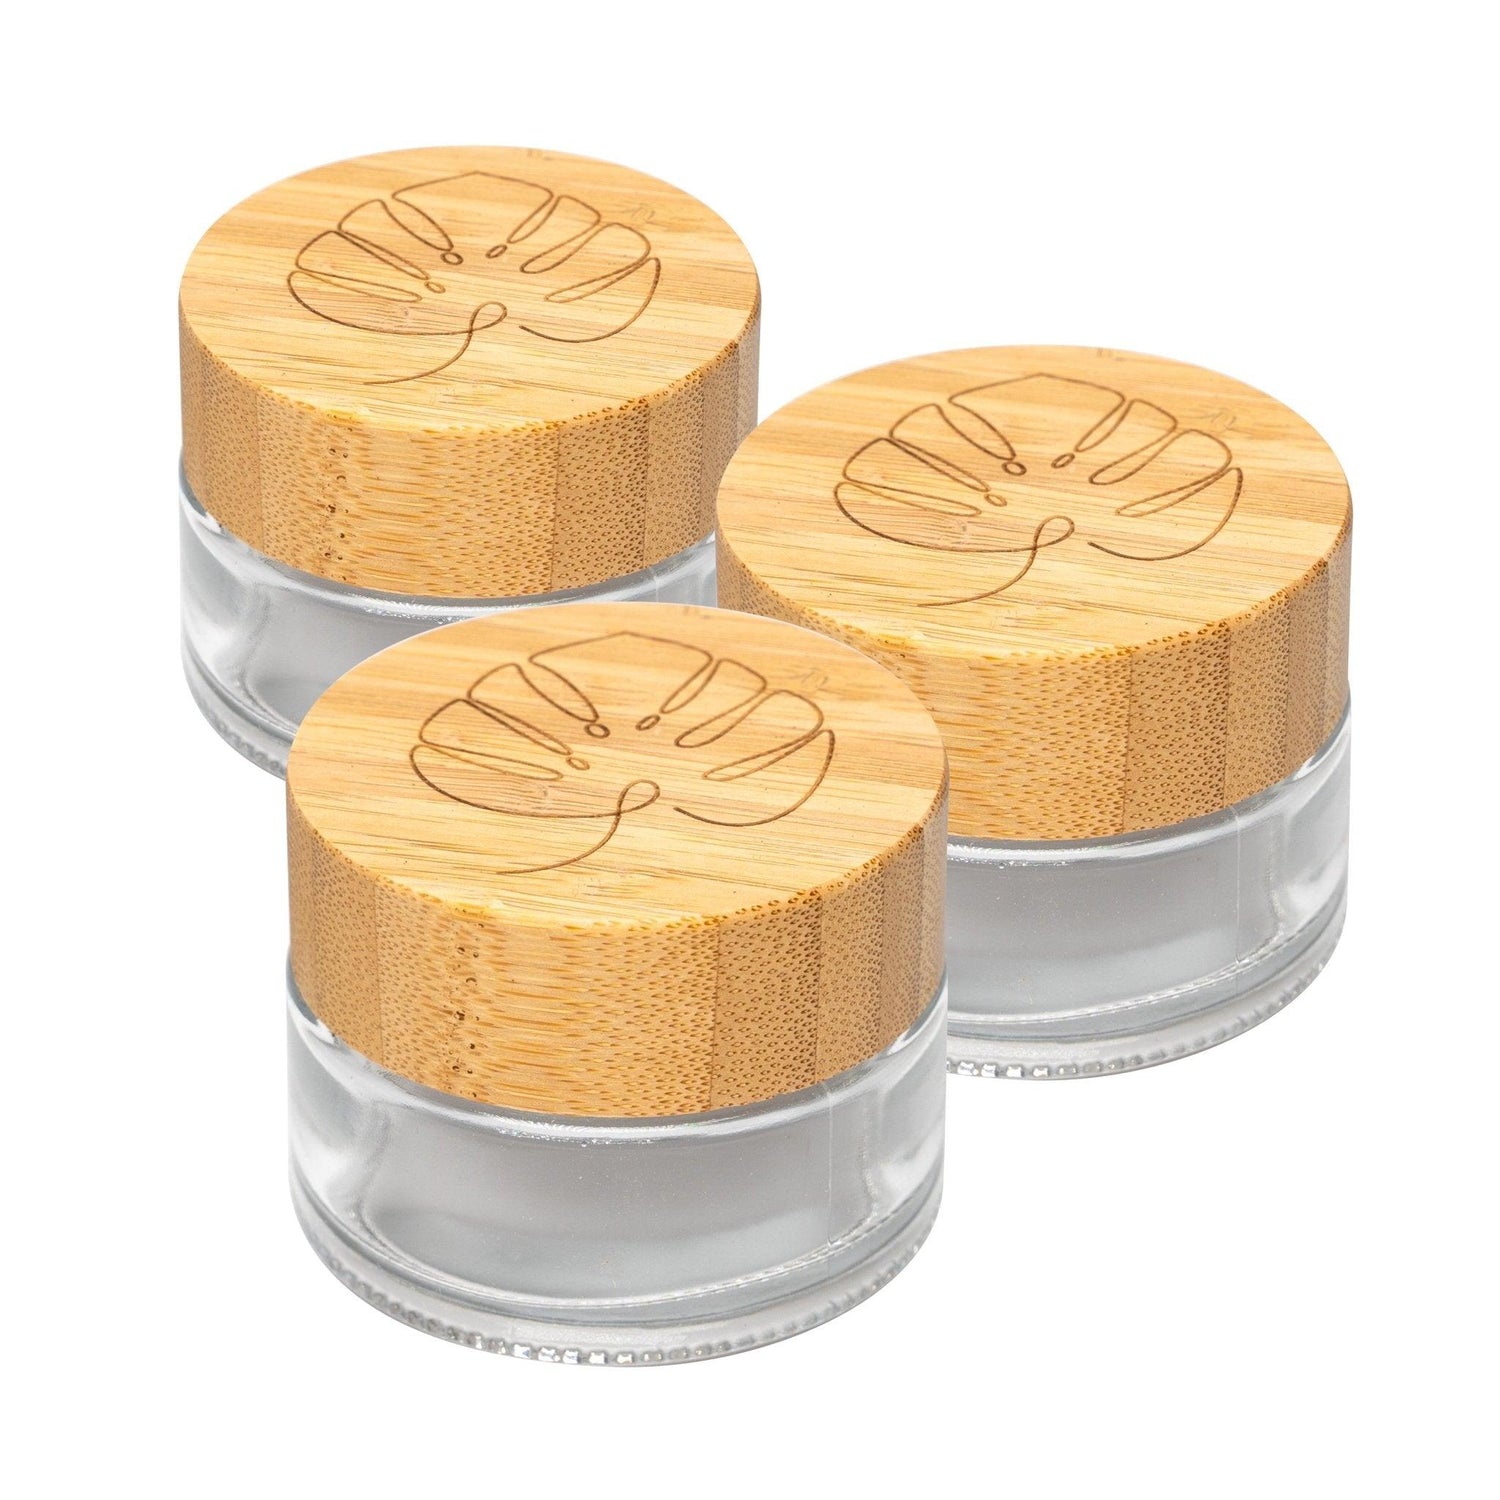 skinkitchen Glastiegel mit Bambusdeckel & Gravur für selbstgemachte Kosmetik 3er Set 50g "Klar" - Mixcover - skin:kitchen